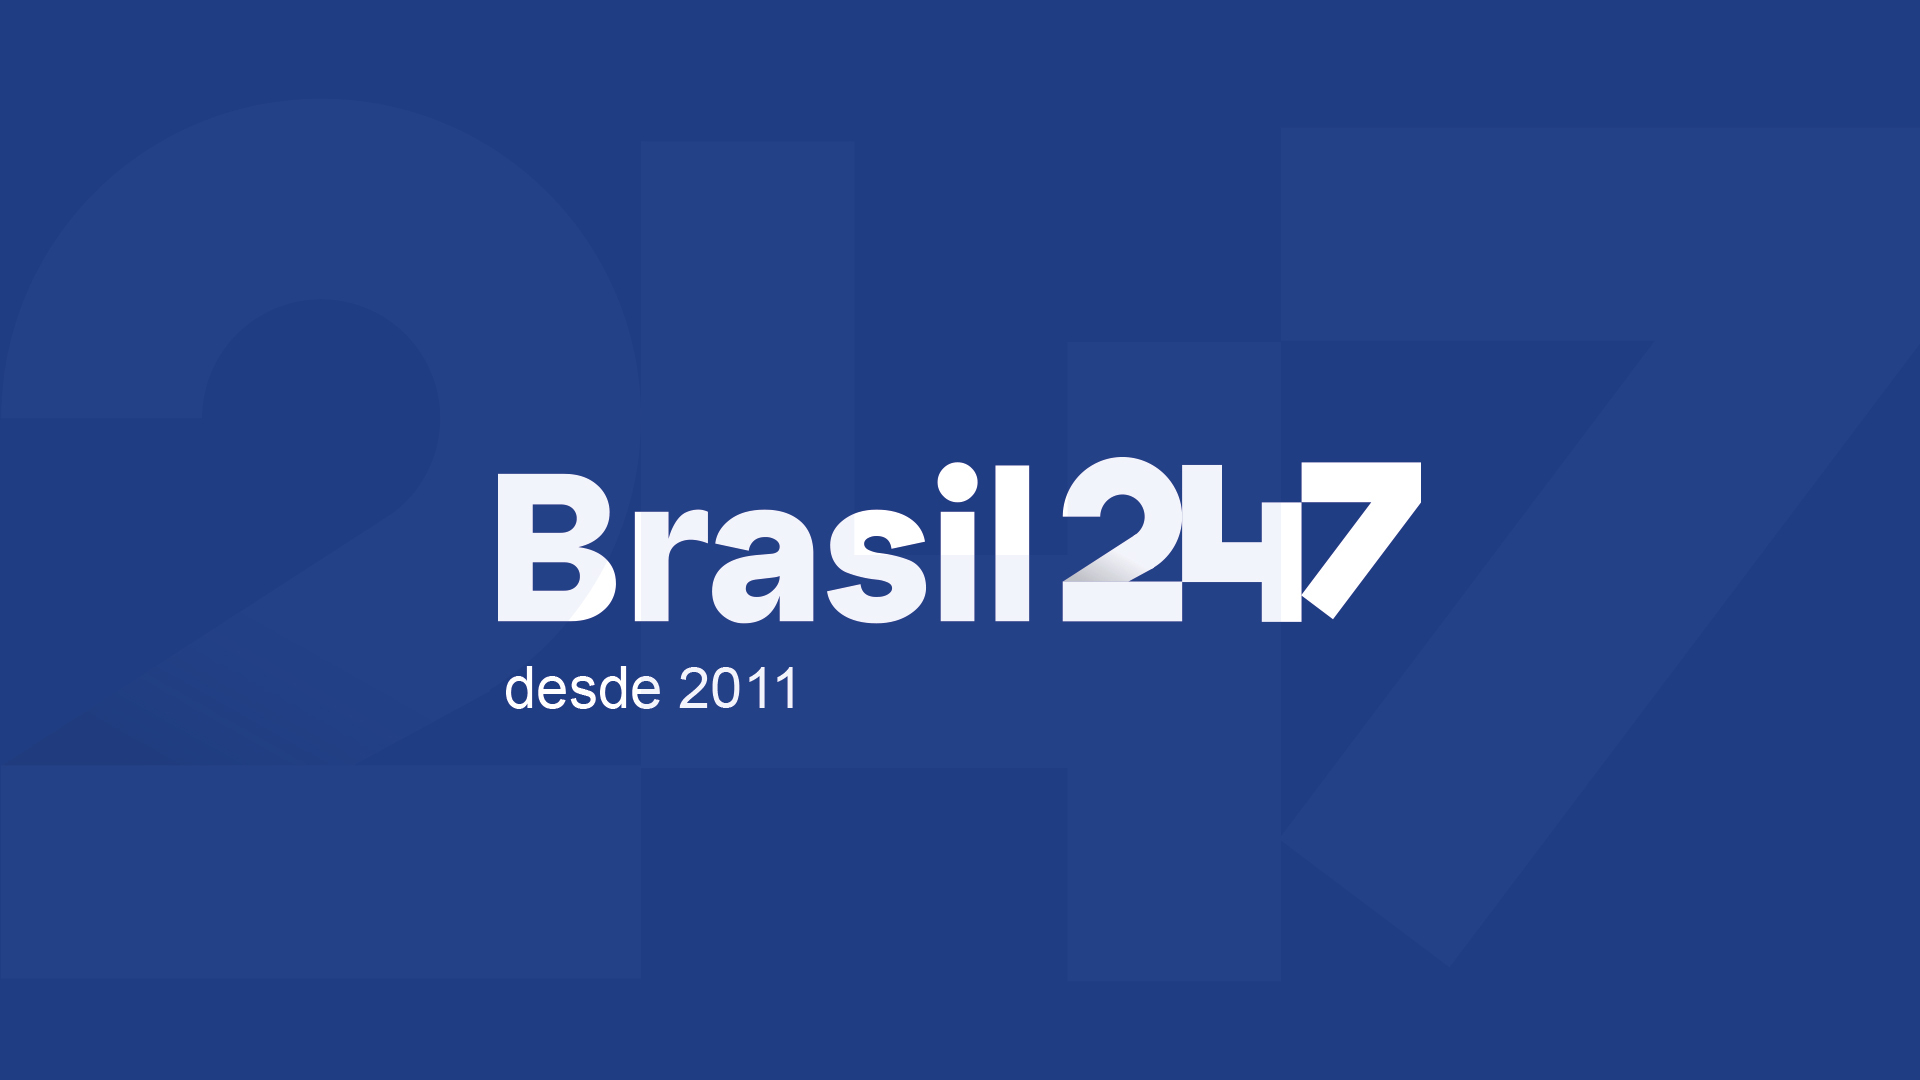 (c) Brasil247.com